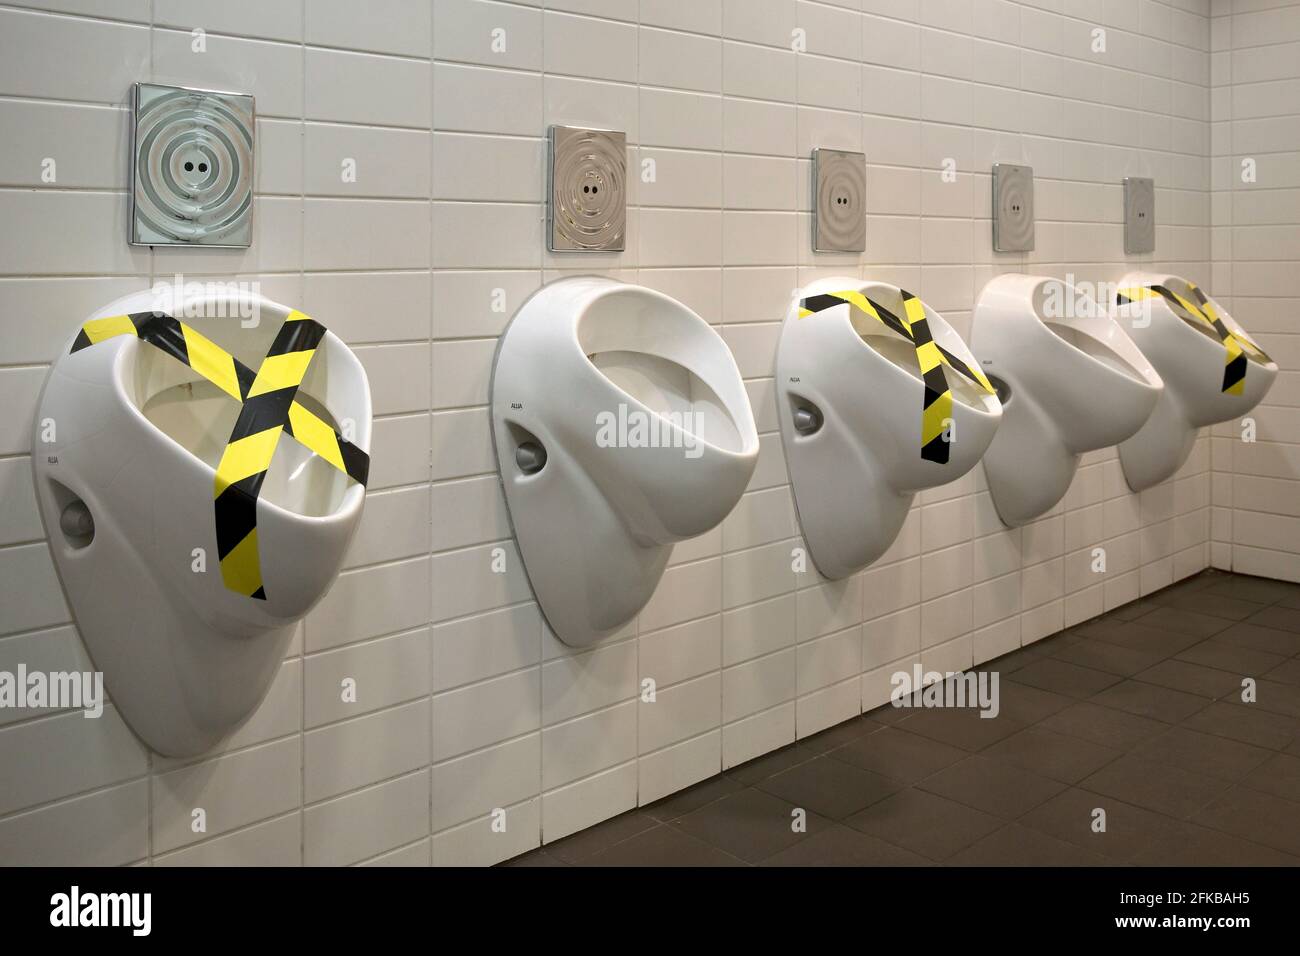 Urinal, Corona normas de separación en un baño de hombres, Alemania Foto de stock